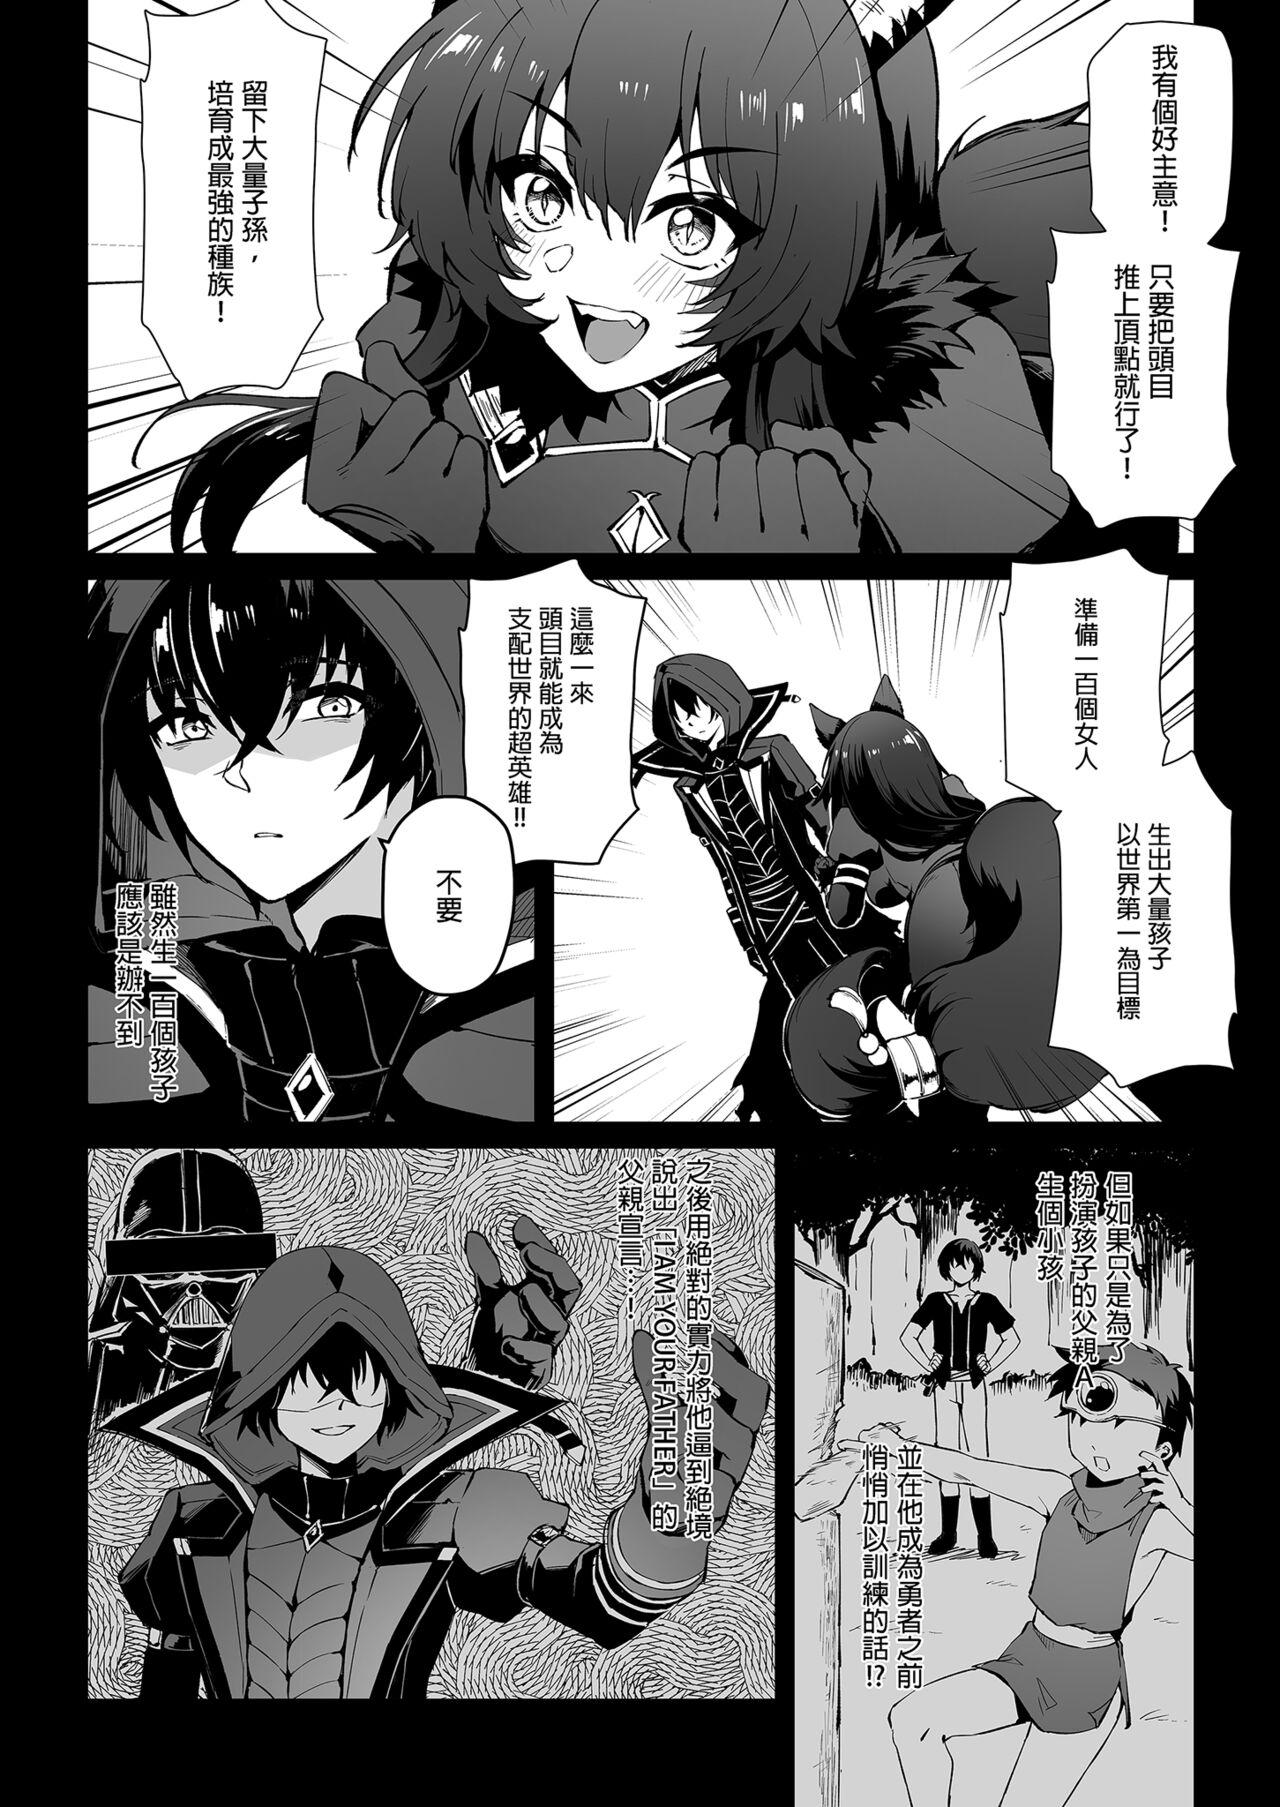 Moaning I NEED MORE POWER! - Kage no jitsuryokusha ni naritakute | the eminence in shadow Small Tits - Page 4